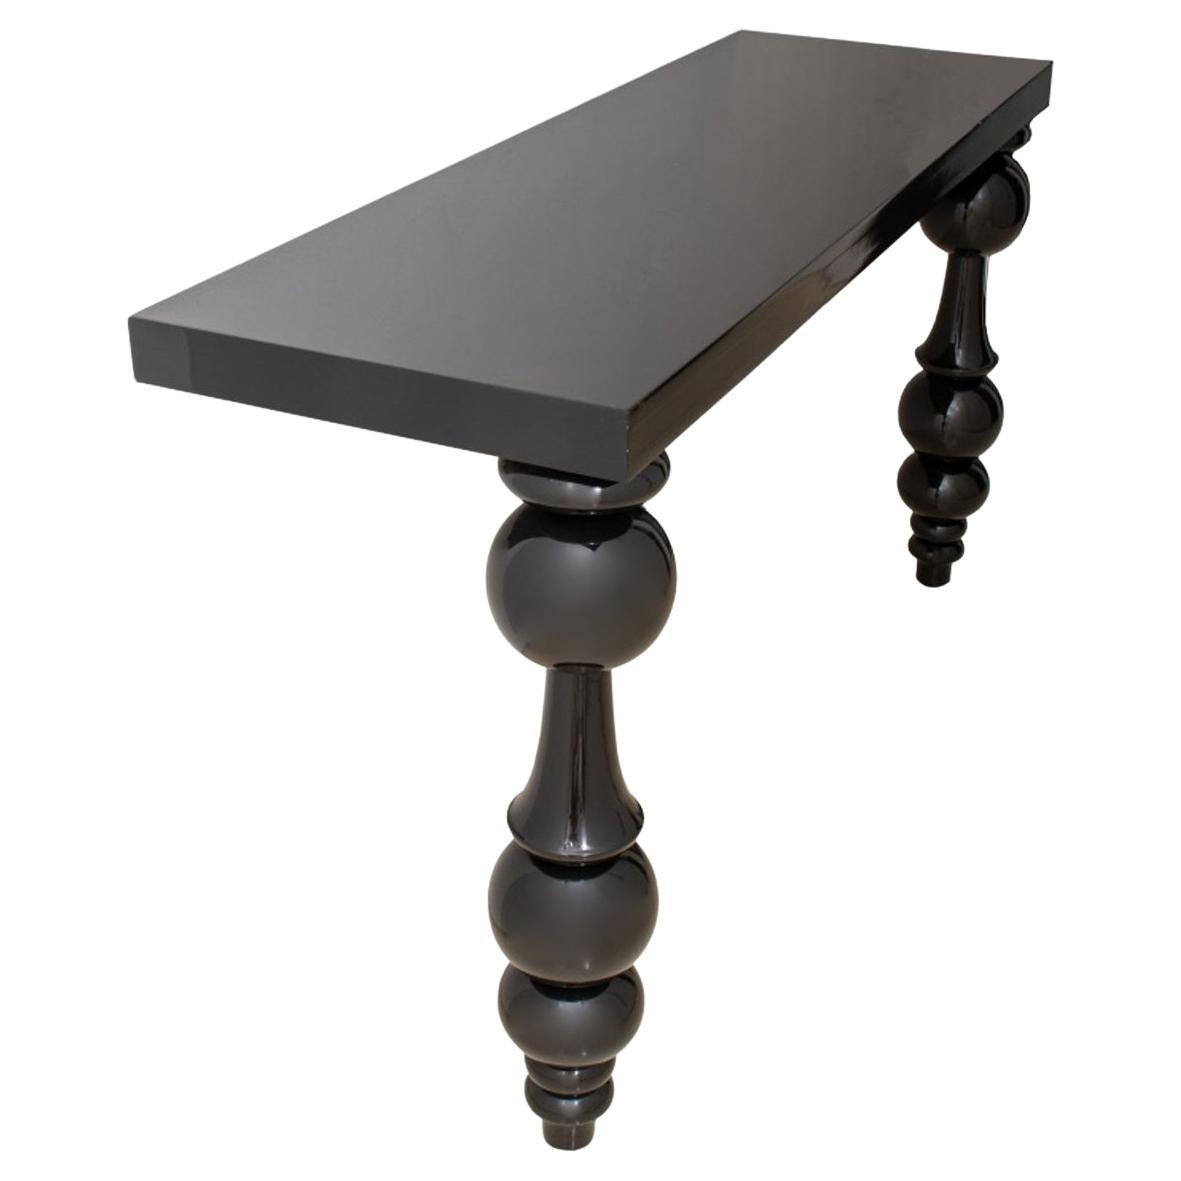 Baroque Revival Retro Black Lacquer Console Table For Sale